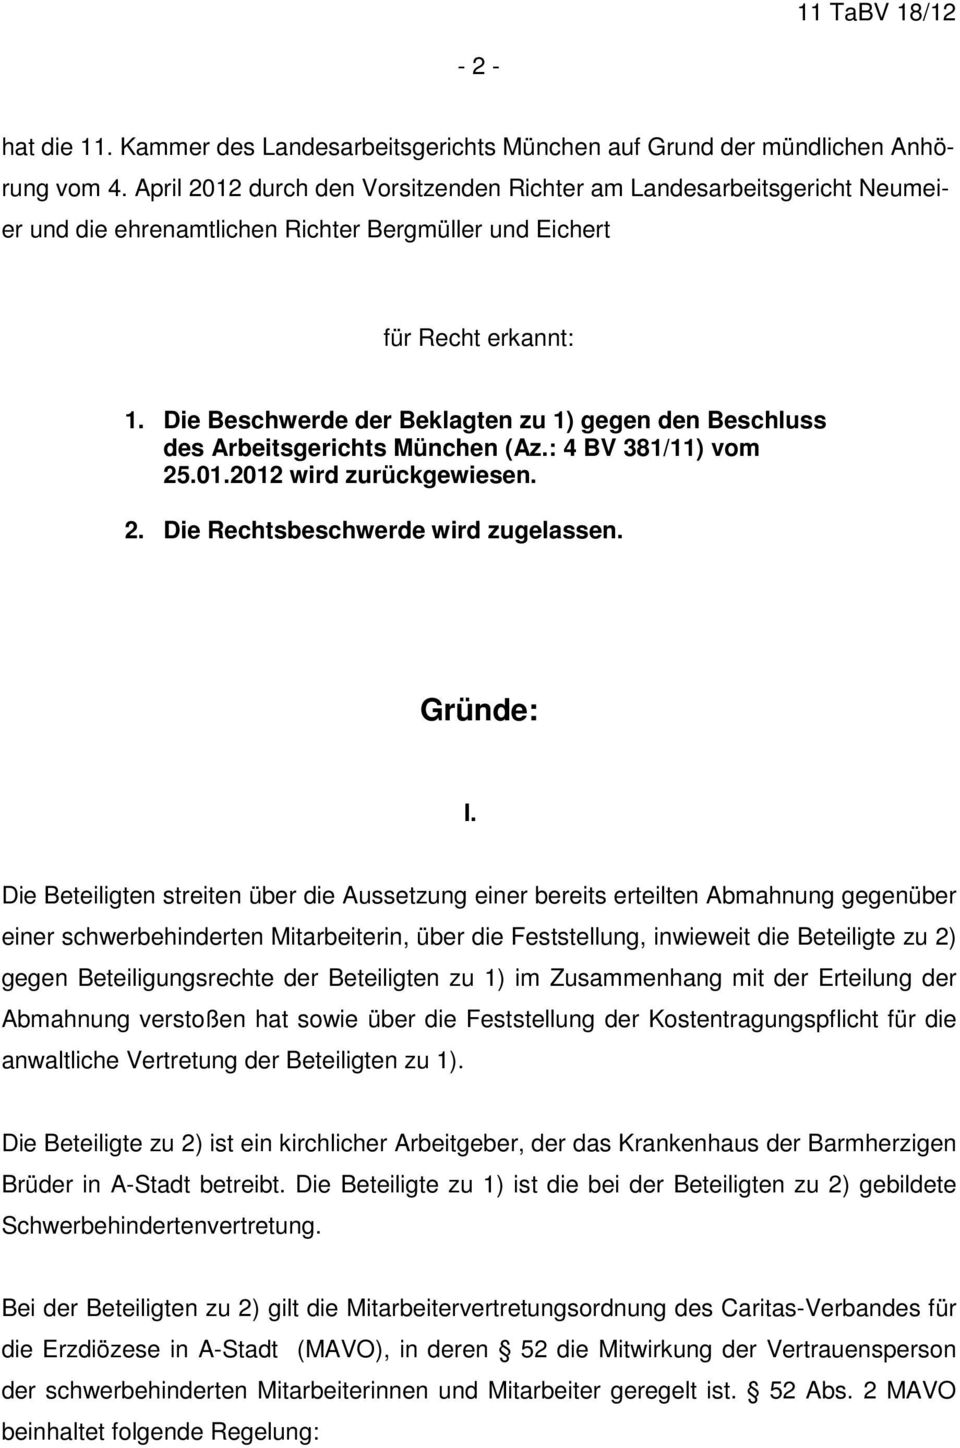 Die Beschwerde der Beklagten zu 1) gegen den Beschluss des Arbeitsgerichts München (Az.: 4 BV 381/11) vom 25.01.2012 wird zurückgewiesen. 2. Die Rechtsbeschwerde wird zugelassen. Gründe: I.